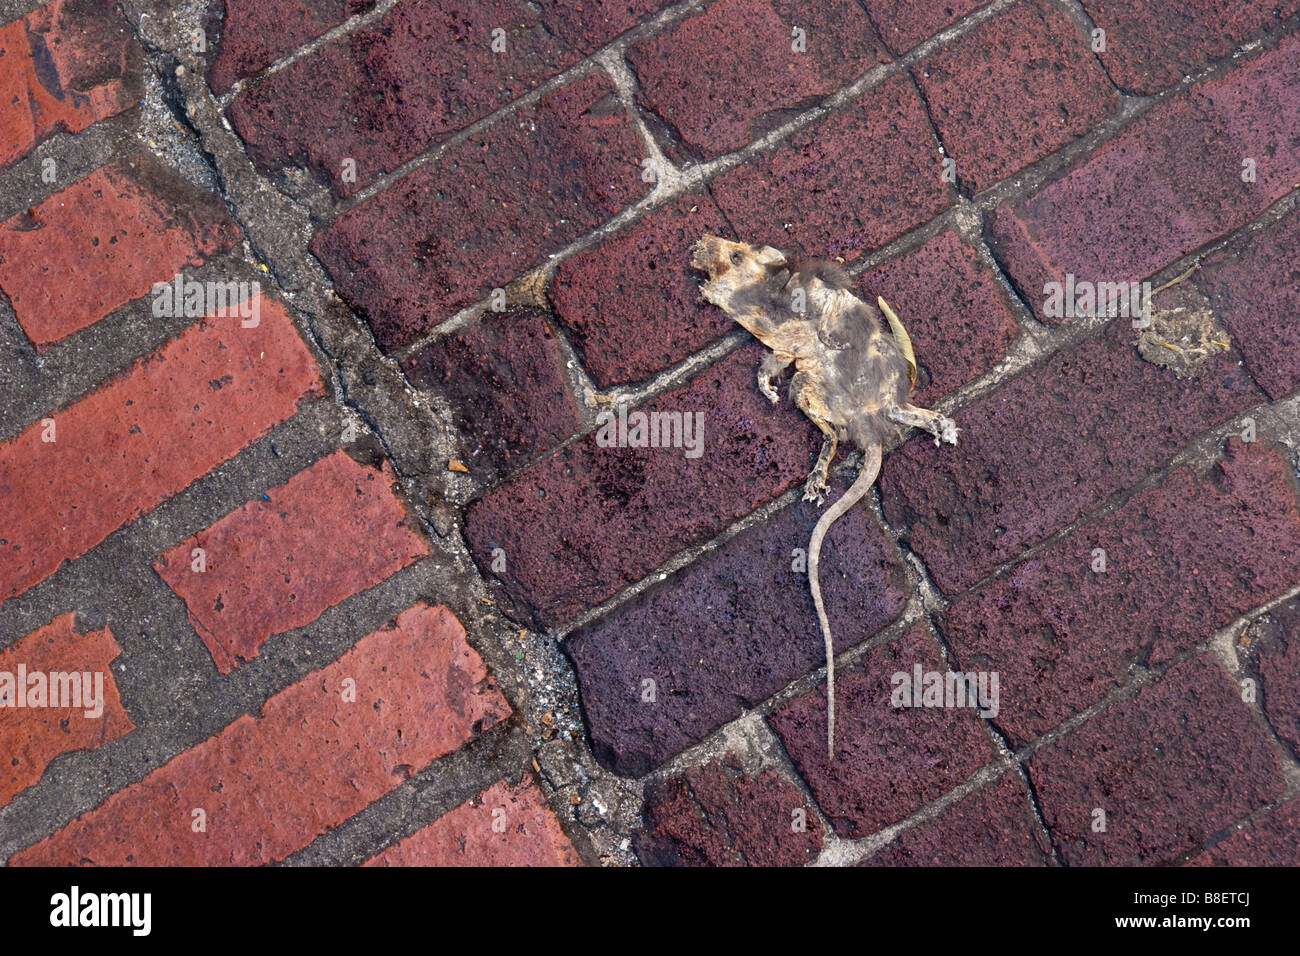 La souris morte sur le trottoir Banque D'Images